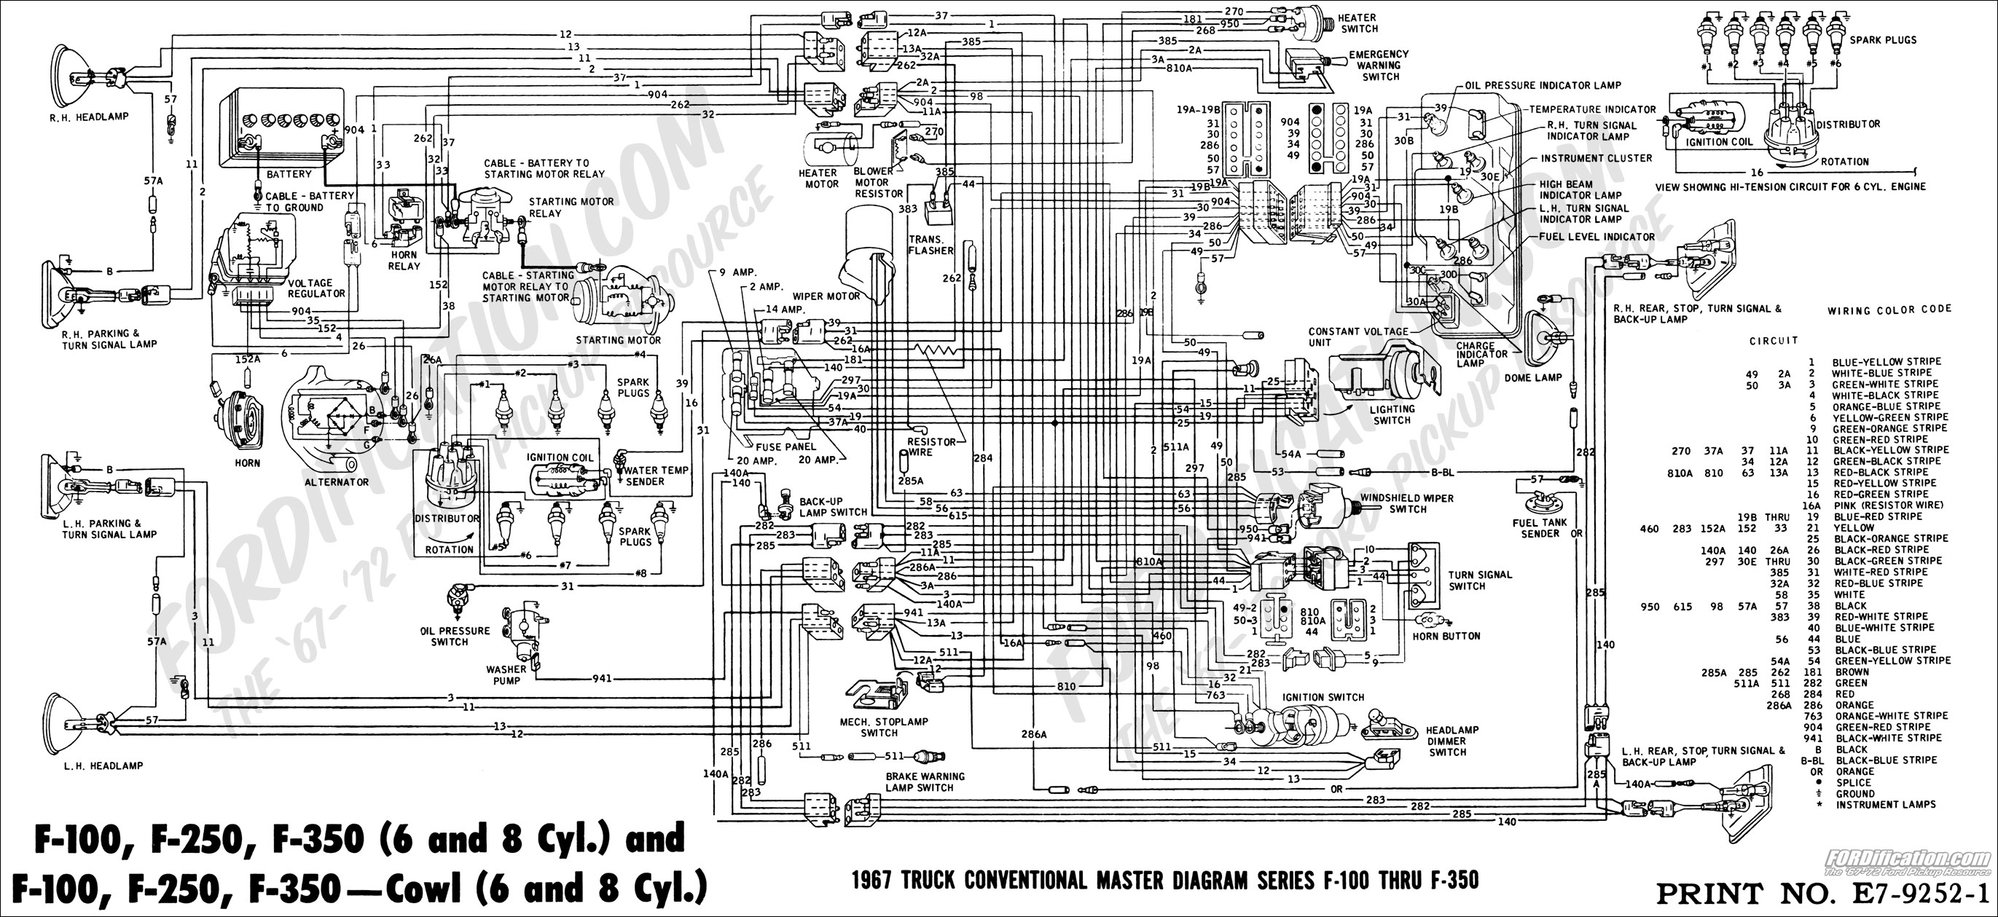 1973 Cb500 Wiring Diagram Schematic Wiring Diagram